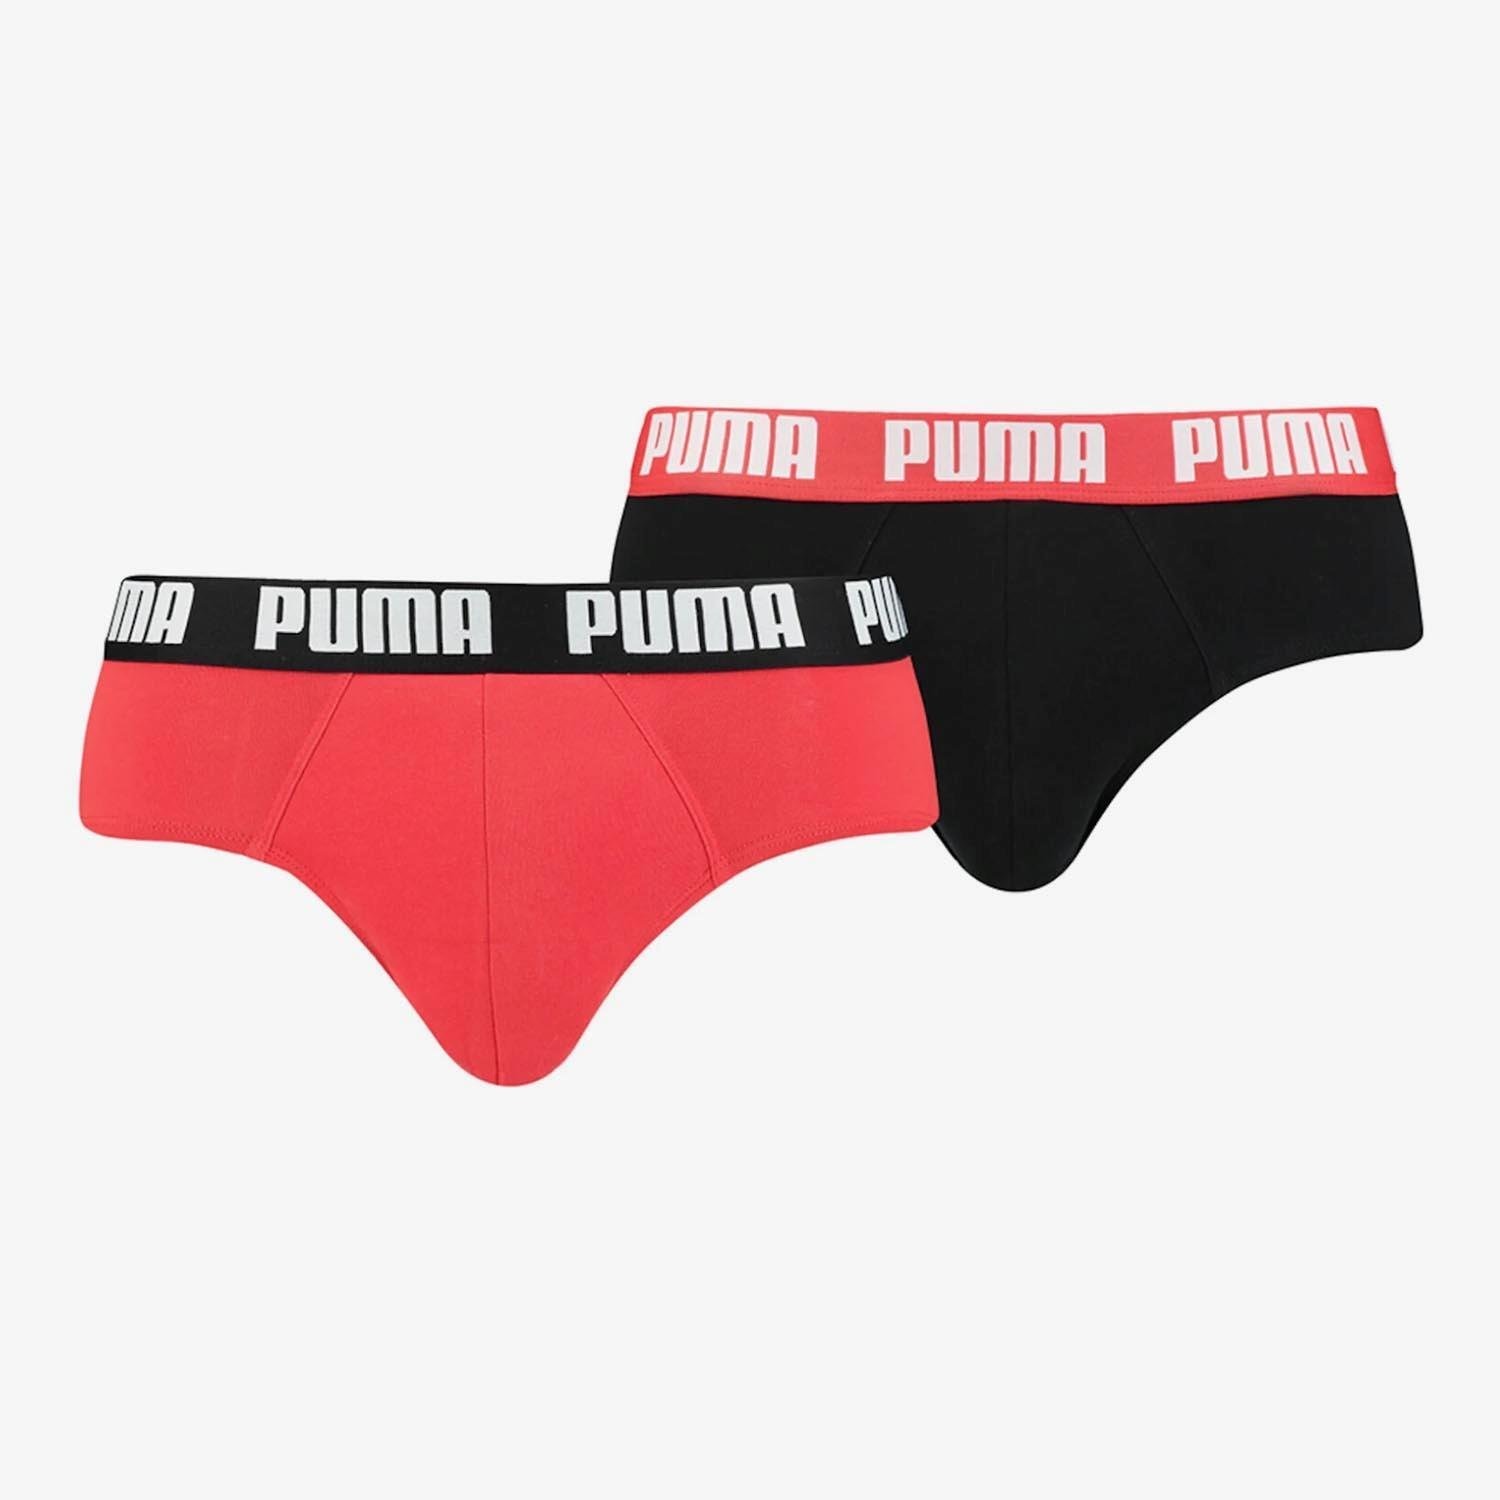 Puma Puma onderbroeken rood/zwart heren heren